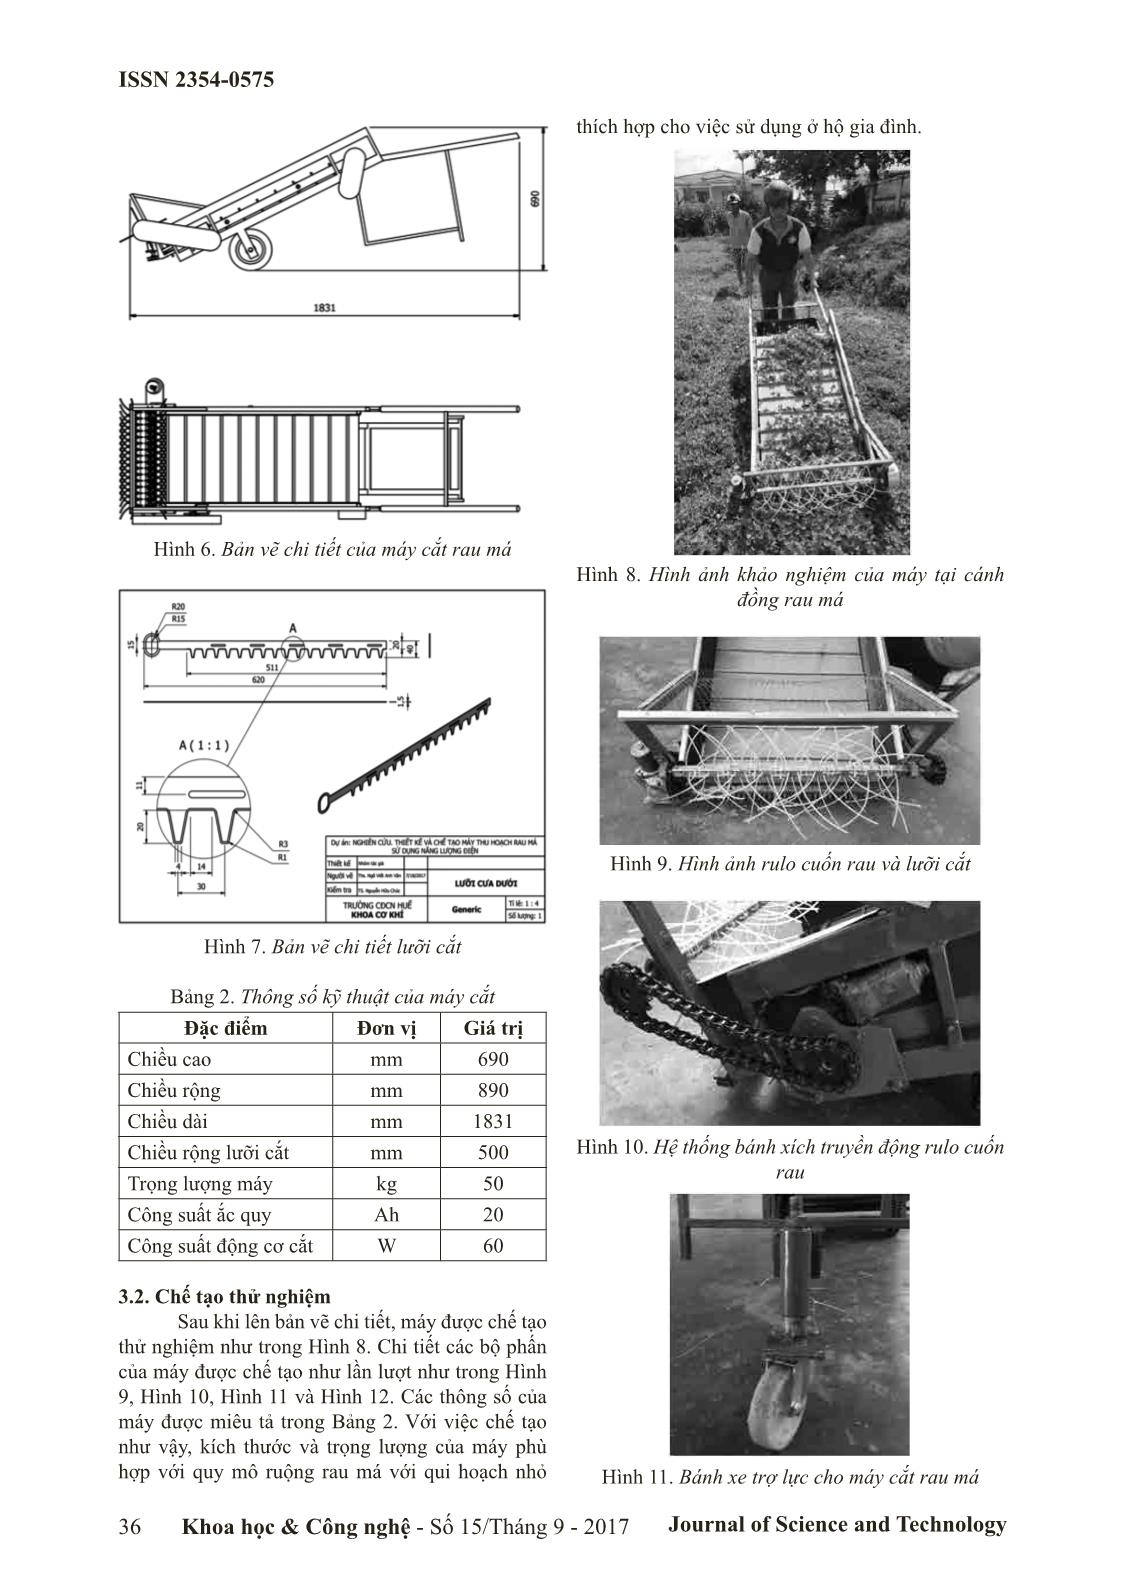 Thiết kế và chế tạo máy cắt rau má trang 3